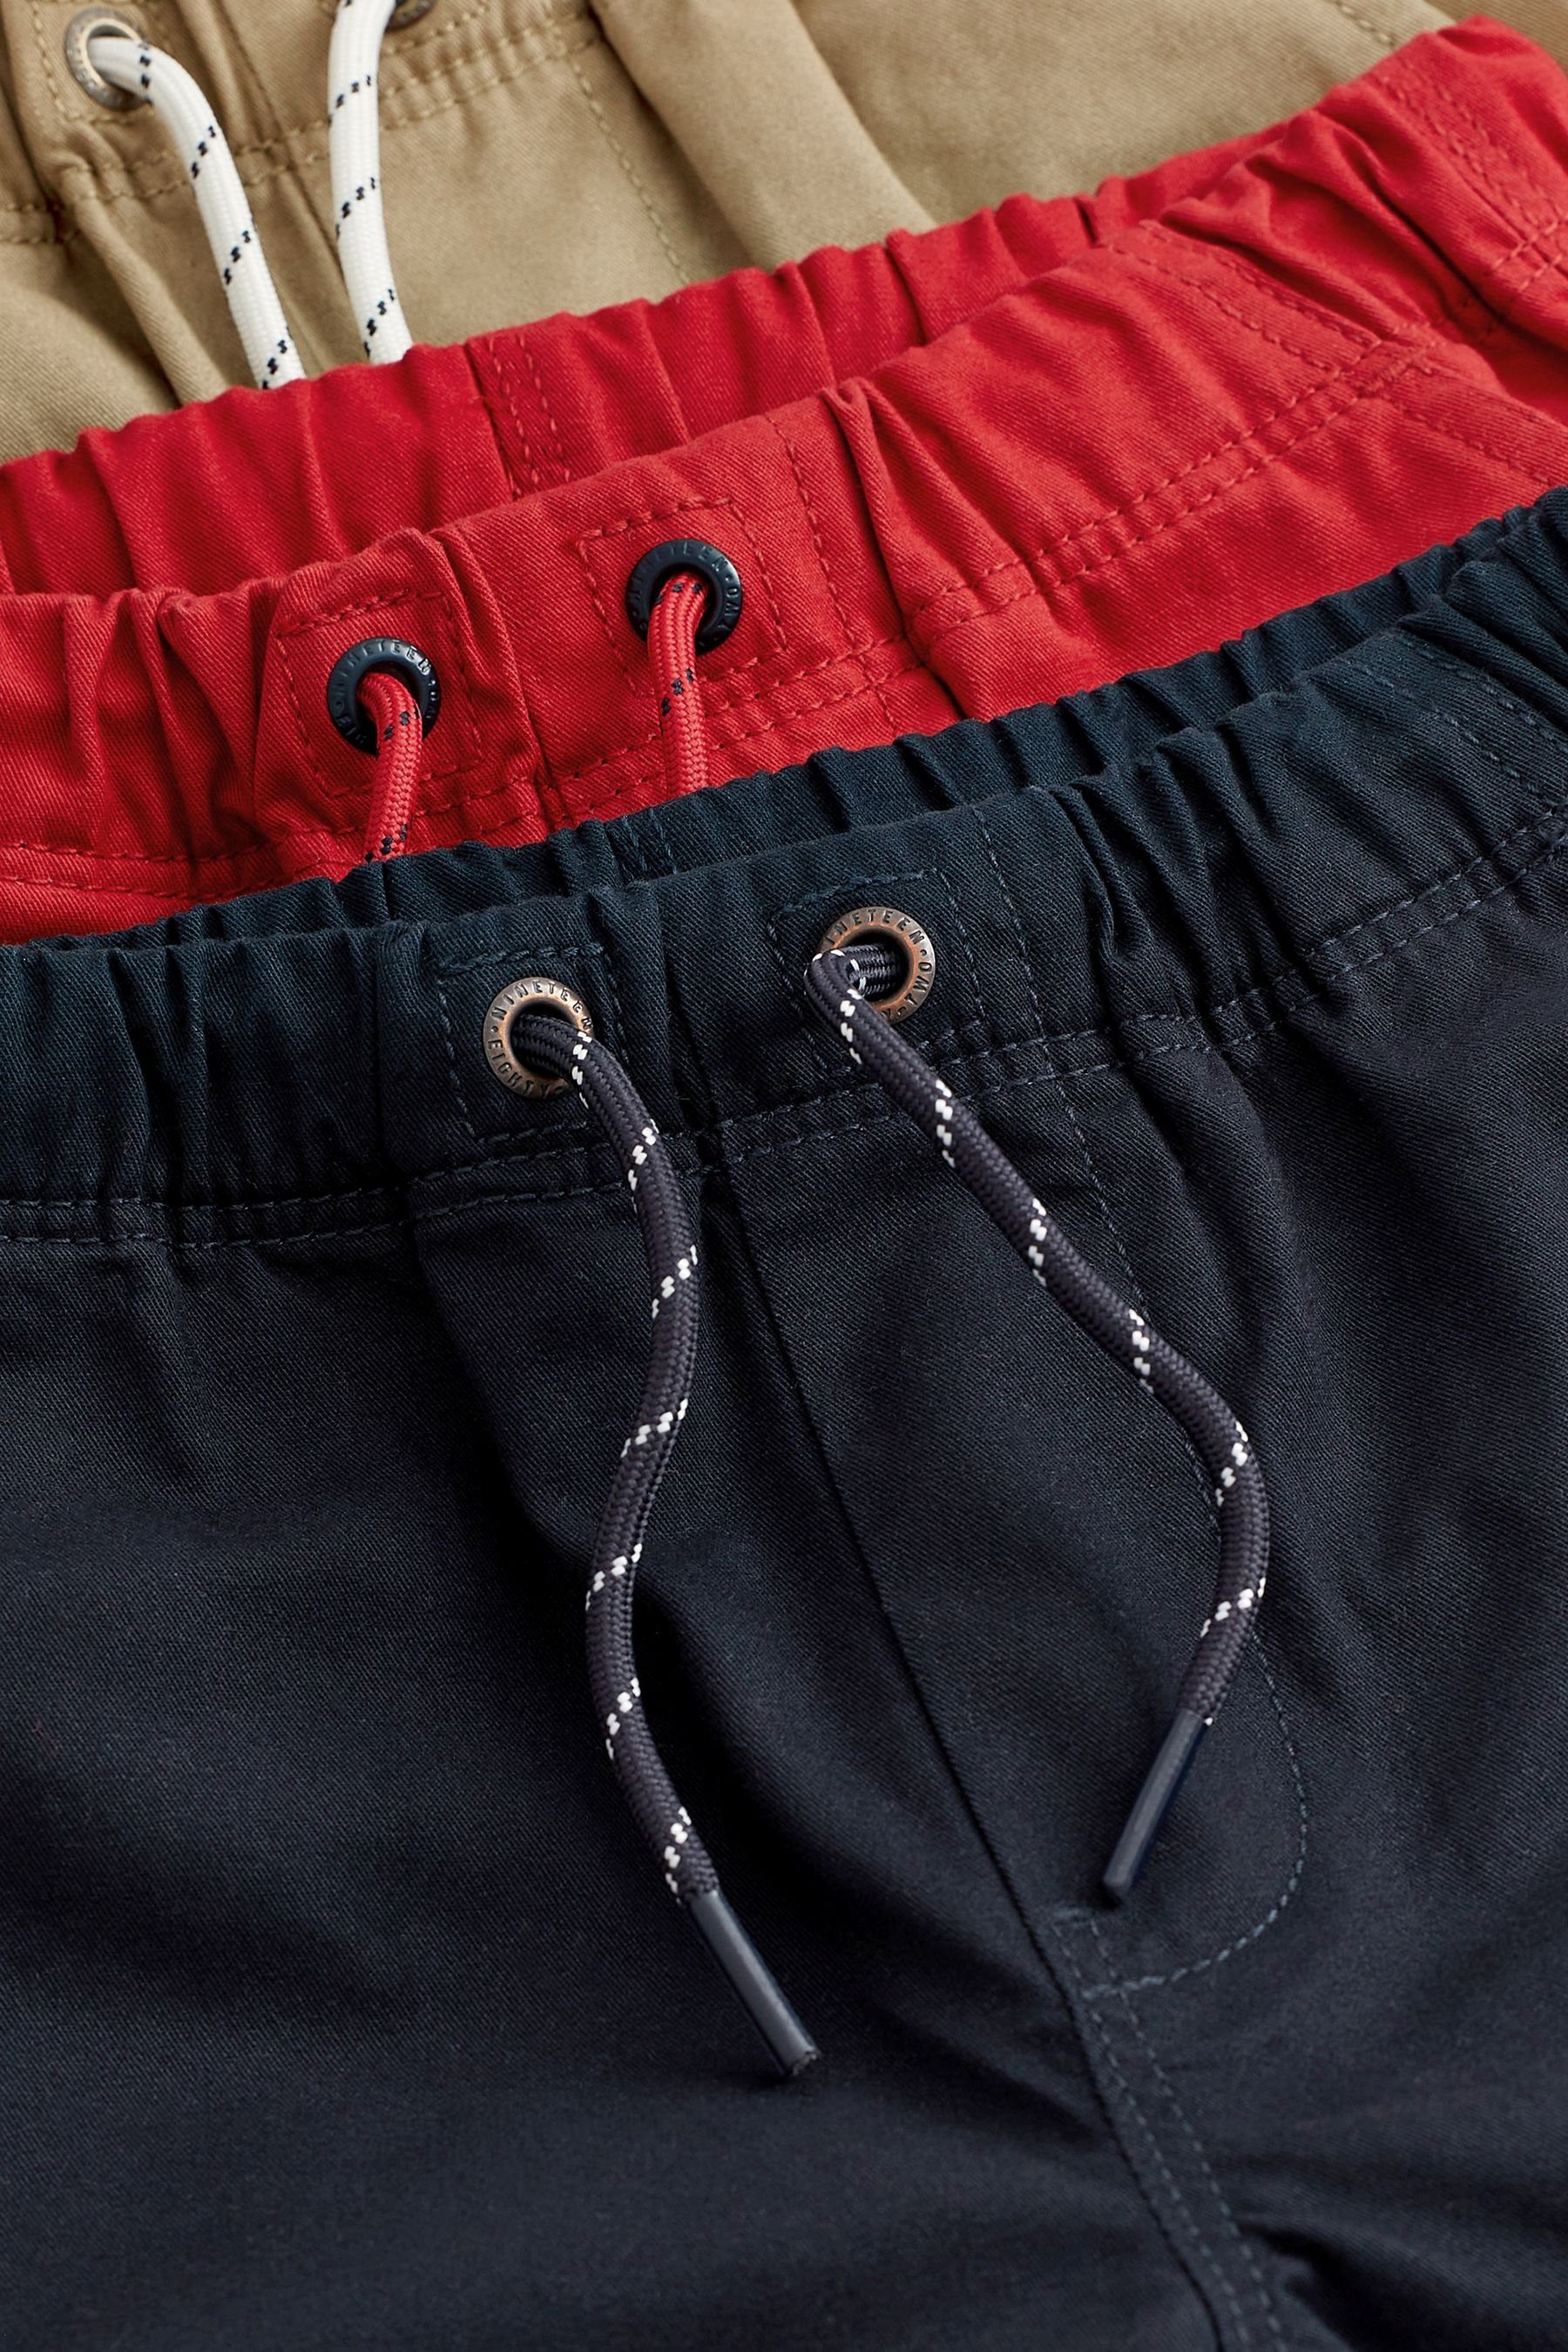 Shorts (3-tlg) Brown/Red Next 3er-Pack im Schlupf-Shorts Navy Blue/Tan